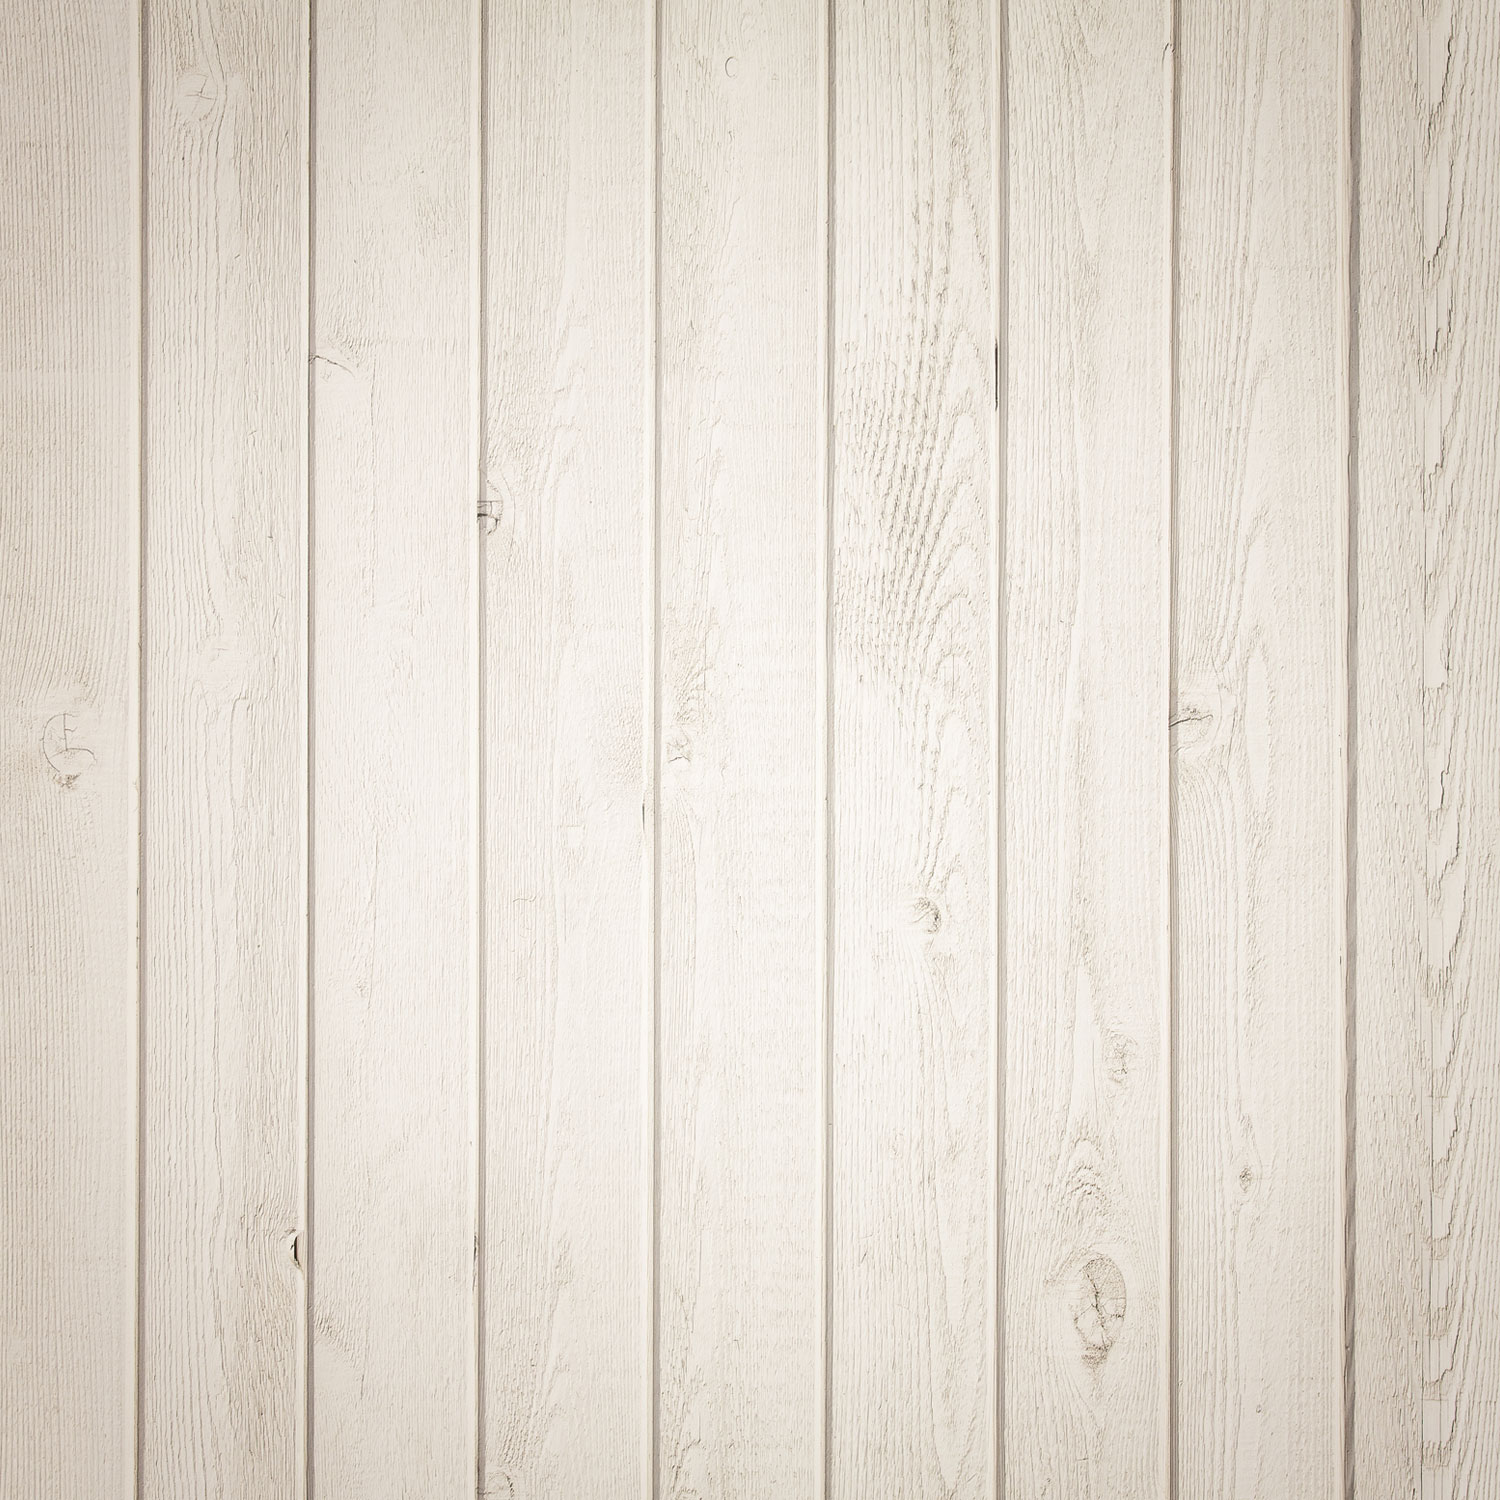 白い木の壁紙,木材,壁,ライン,ベージュ,板